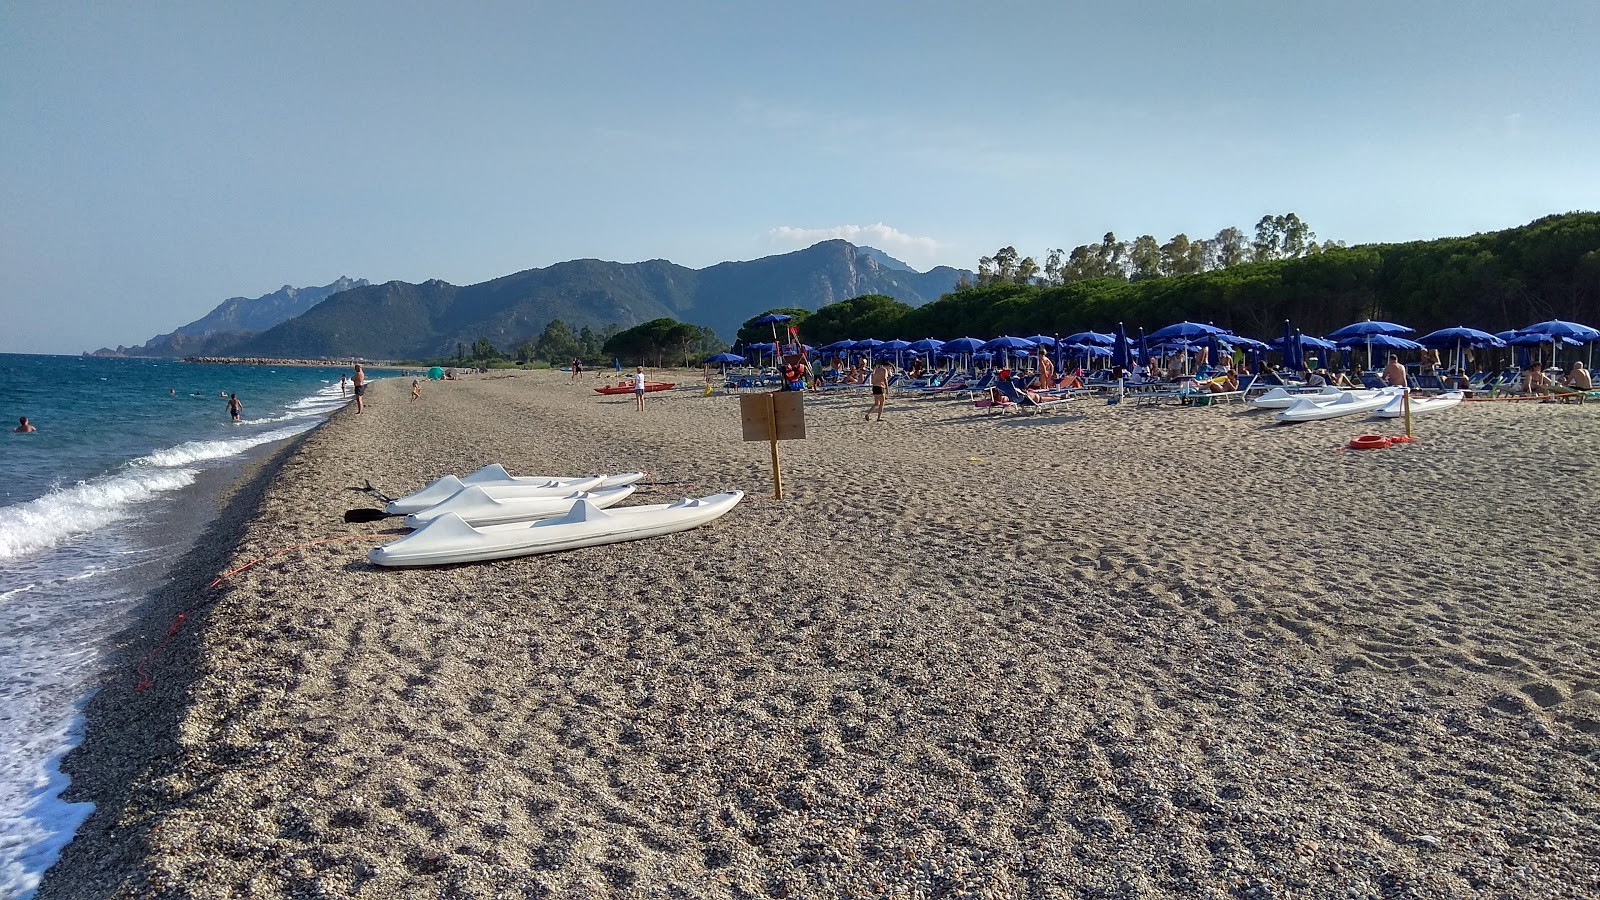 Foto av Spiaggia di Foddini med lång rak strand